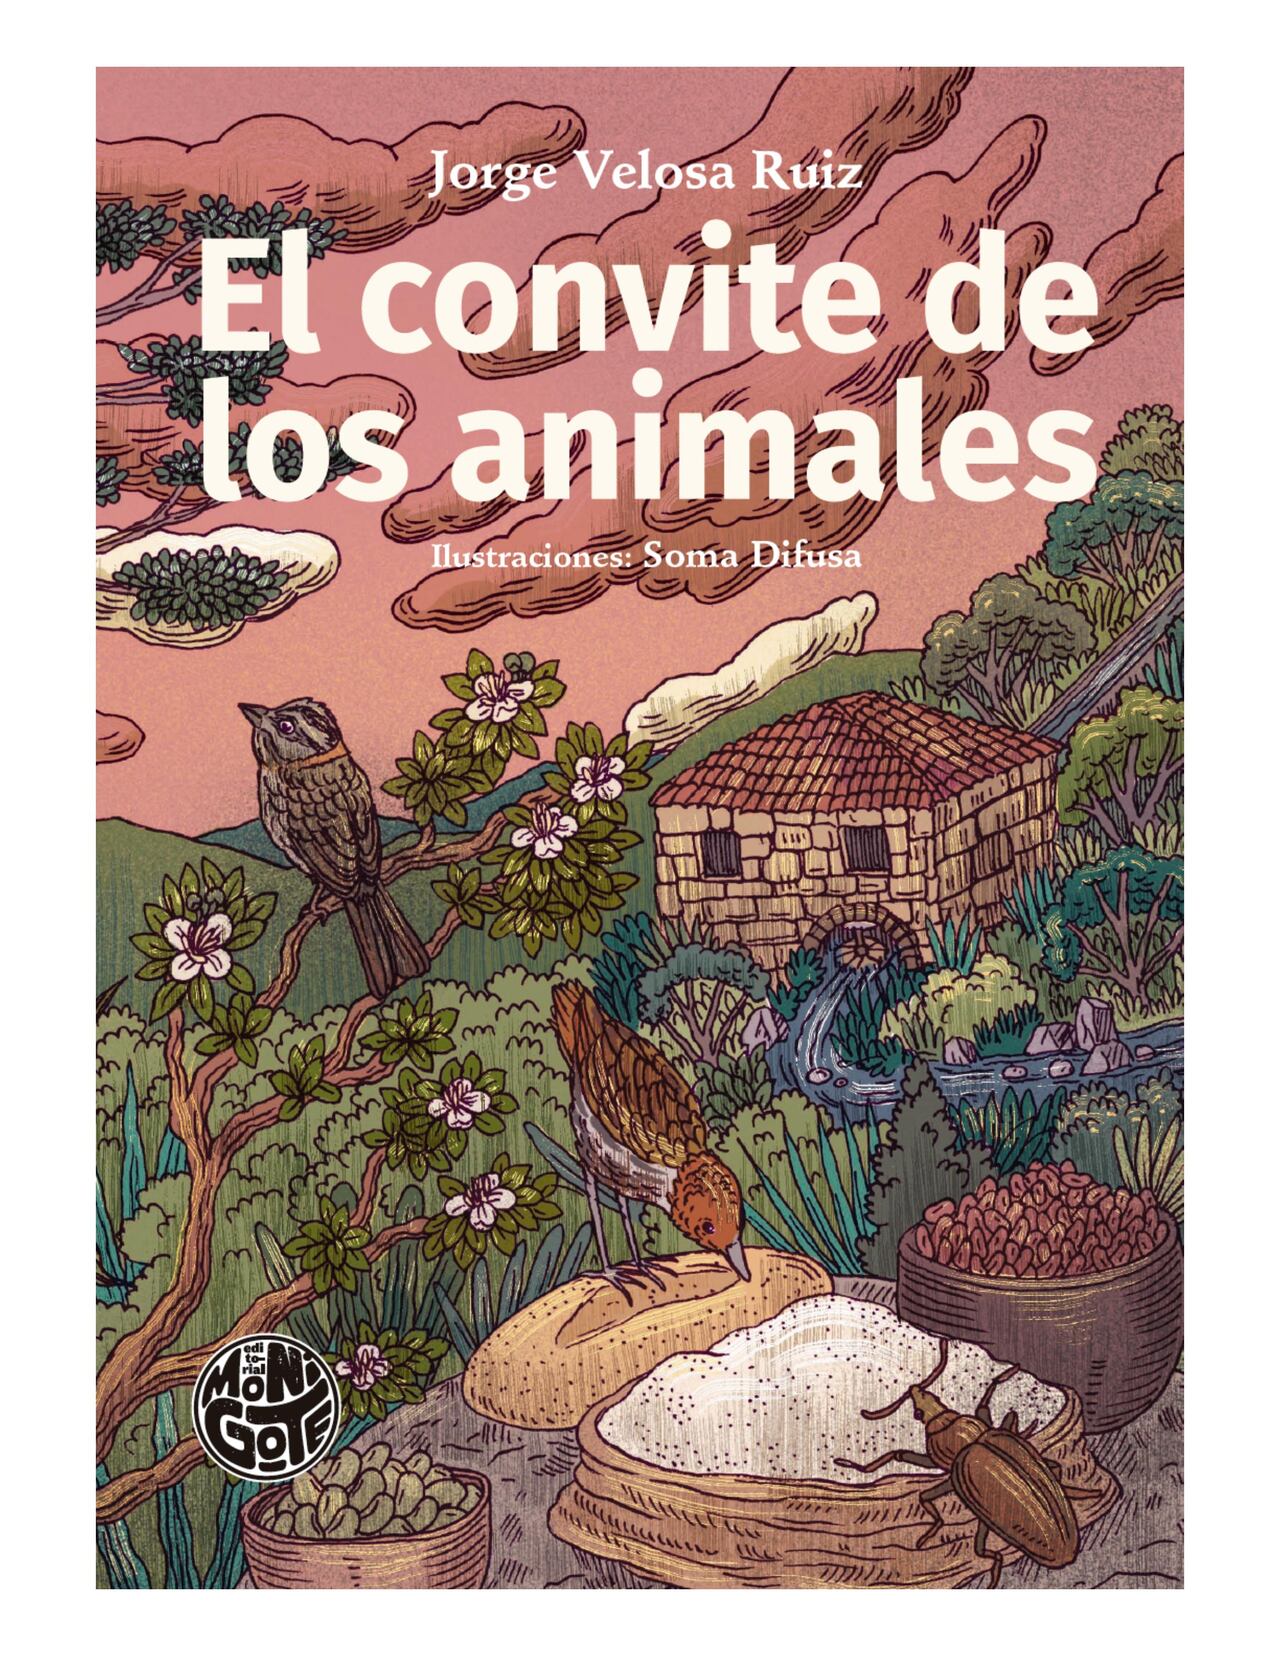 Portada del nuevo libro de Jorge Velosa "El convite de los animales." La ilustración es de Soma Difusa. Cortesía de Editorial Monigote